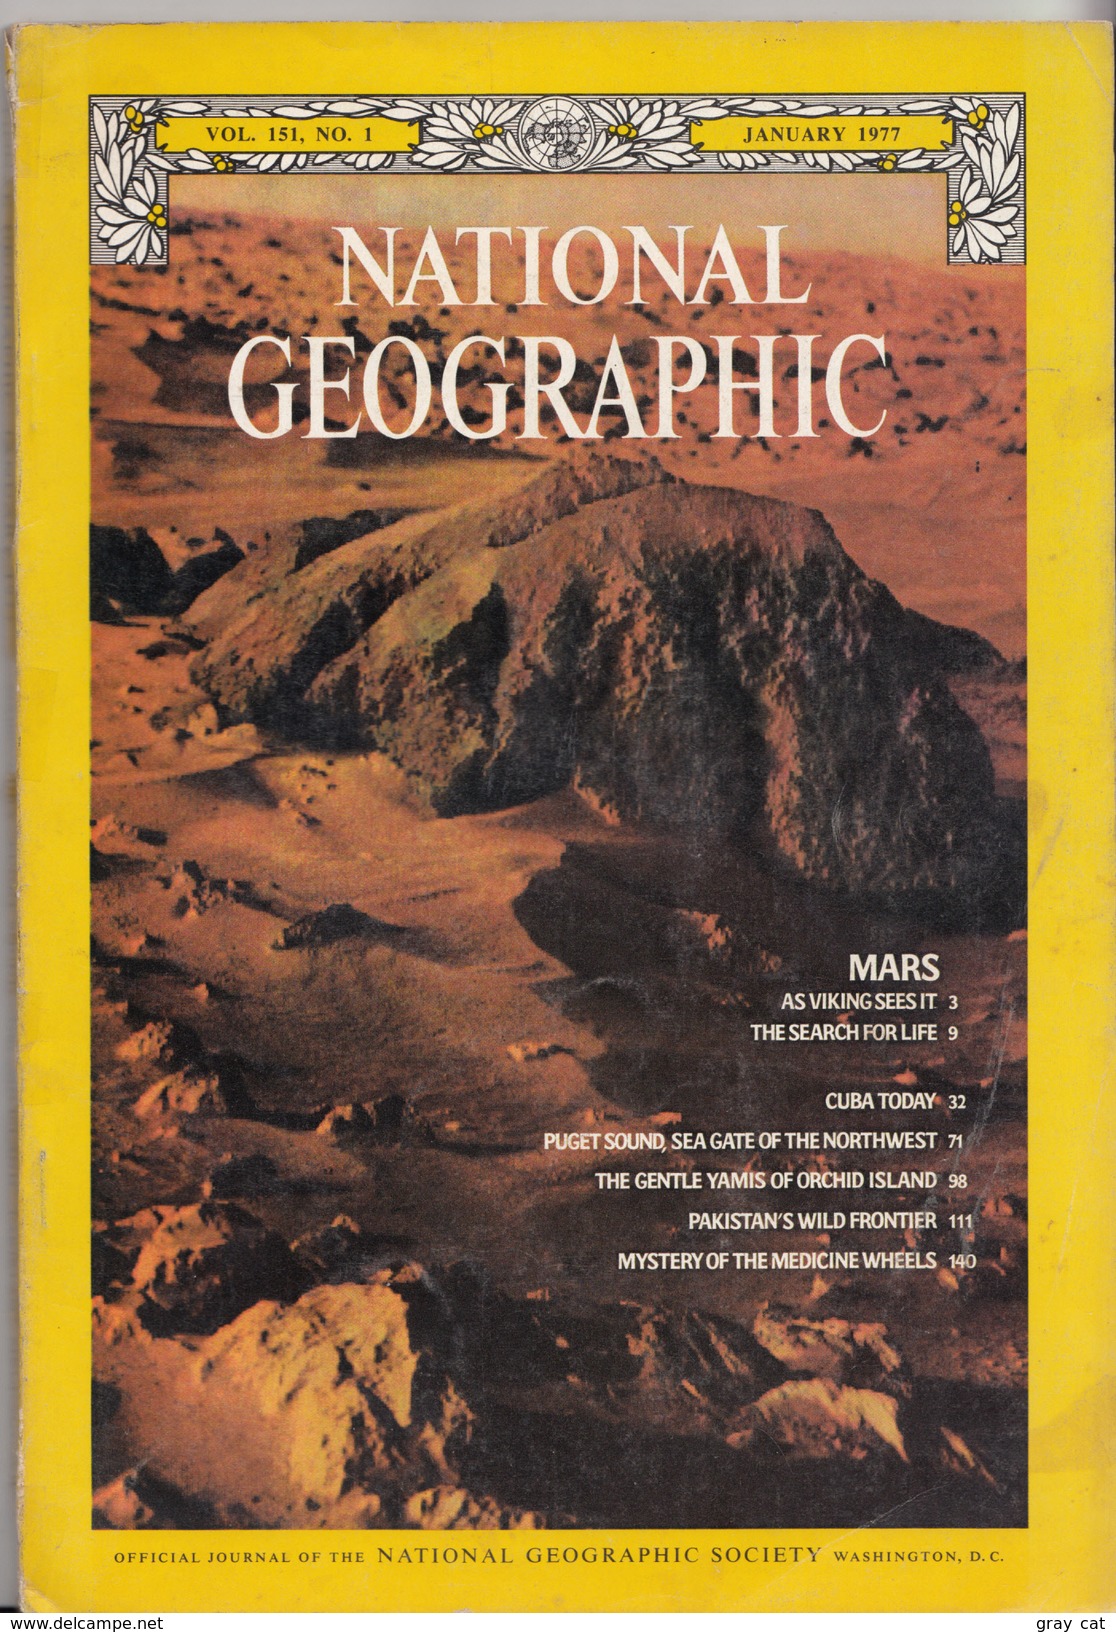 National Geographic Magazine Vol. 151, No. 1, January 1977 - Viaggi/Esplorazioni